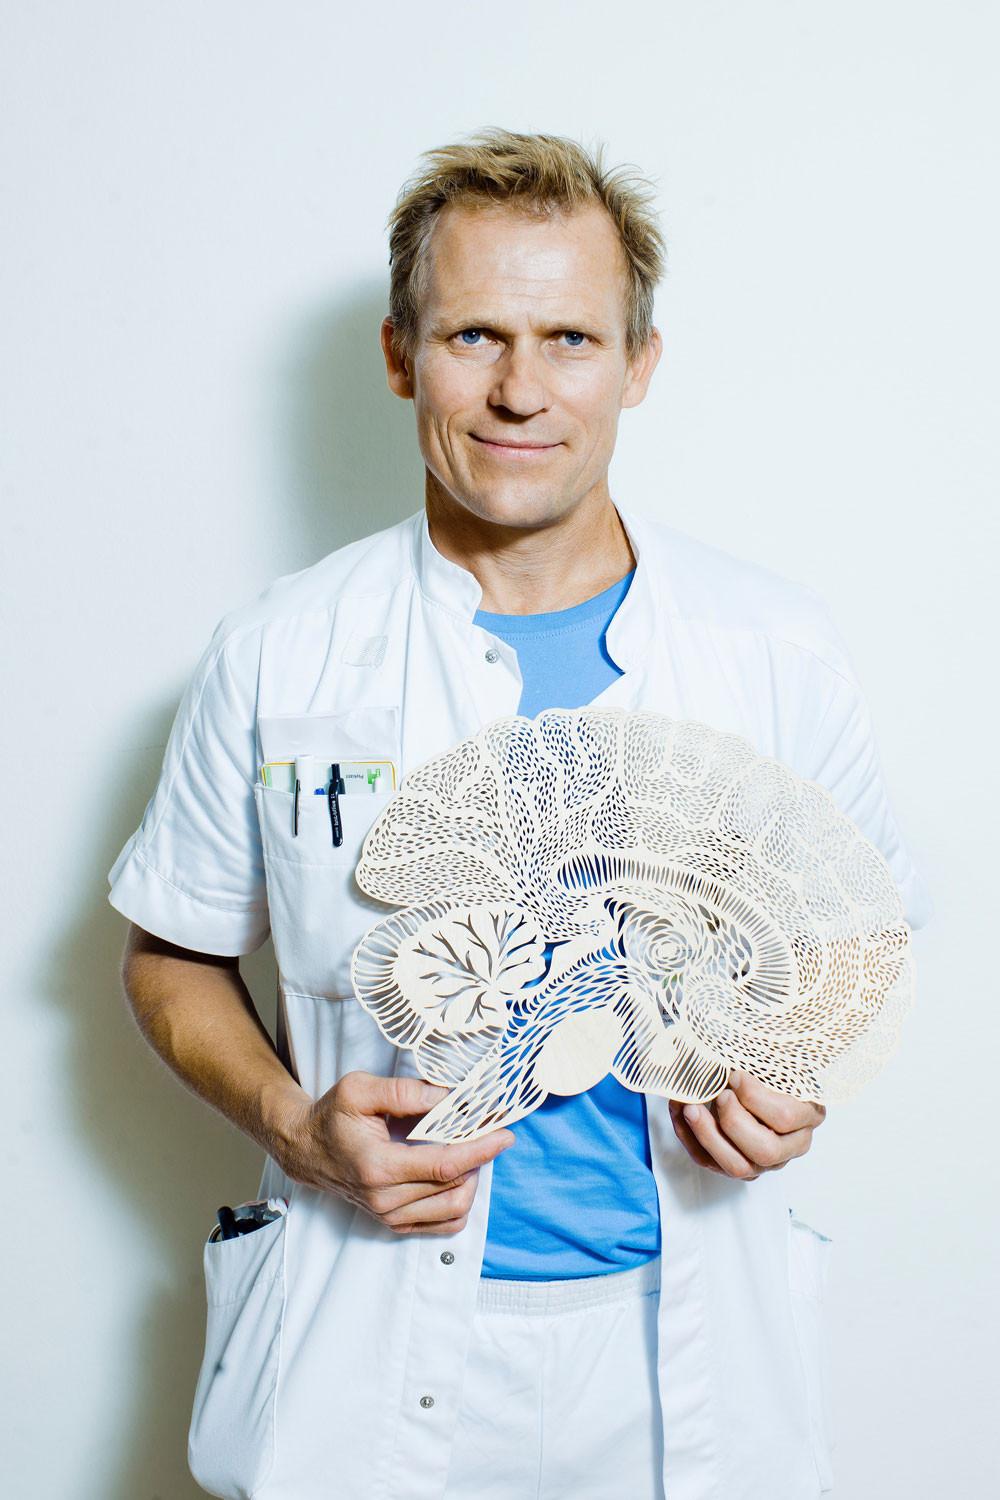 Bjørn Ebdrup fik et lektorat, efter han blev speciallæge i 2017, blev overlægeansat på en lukket afdeling på Psykiatrisk Center Glostrup og forskede på halv tid. Han har været forskningsleder siden august 2021. (Foto: Claus Boesen)